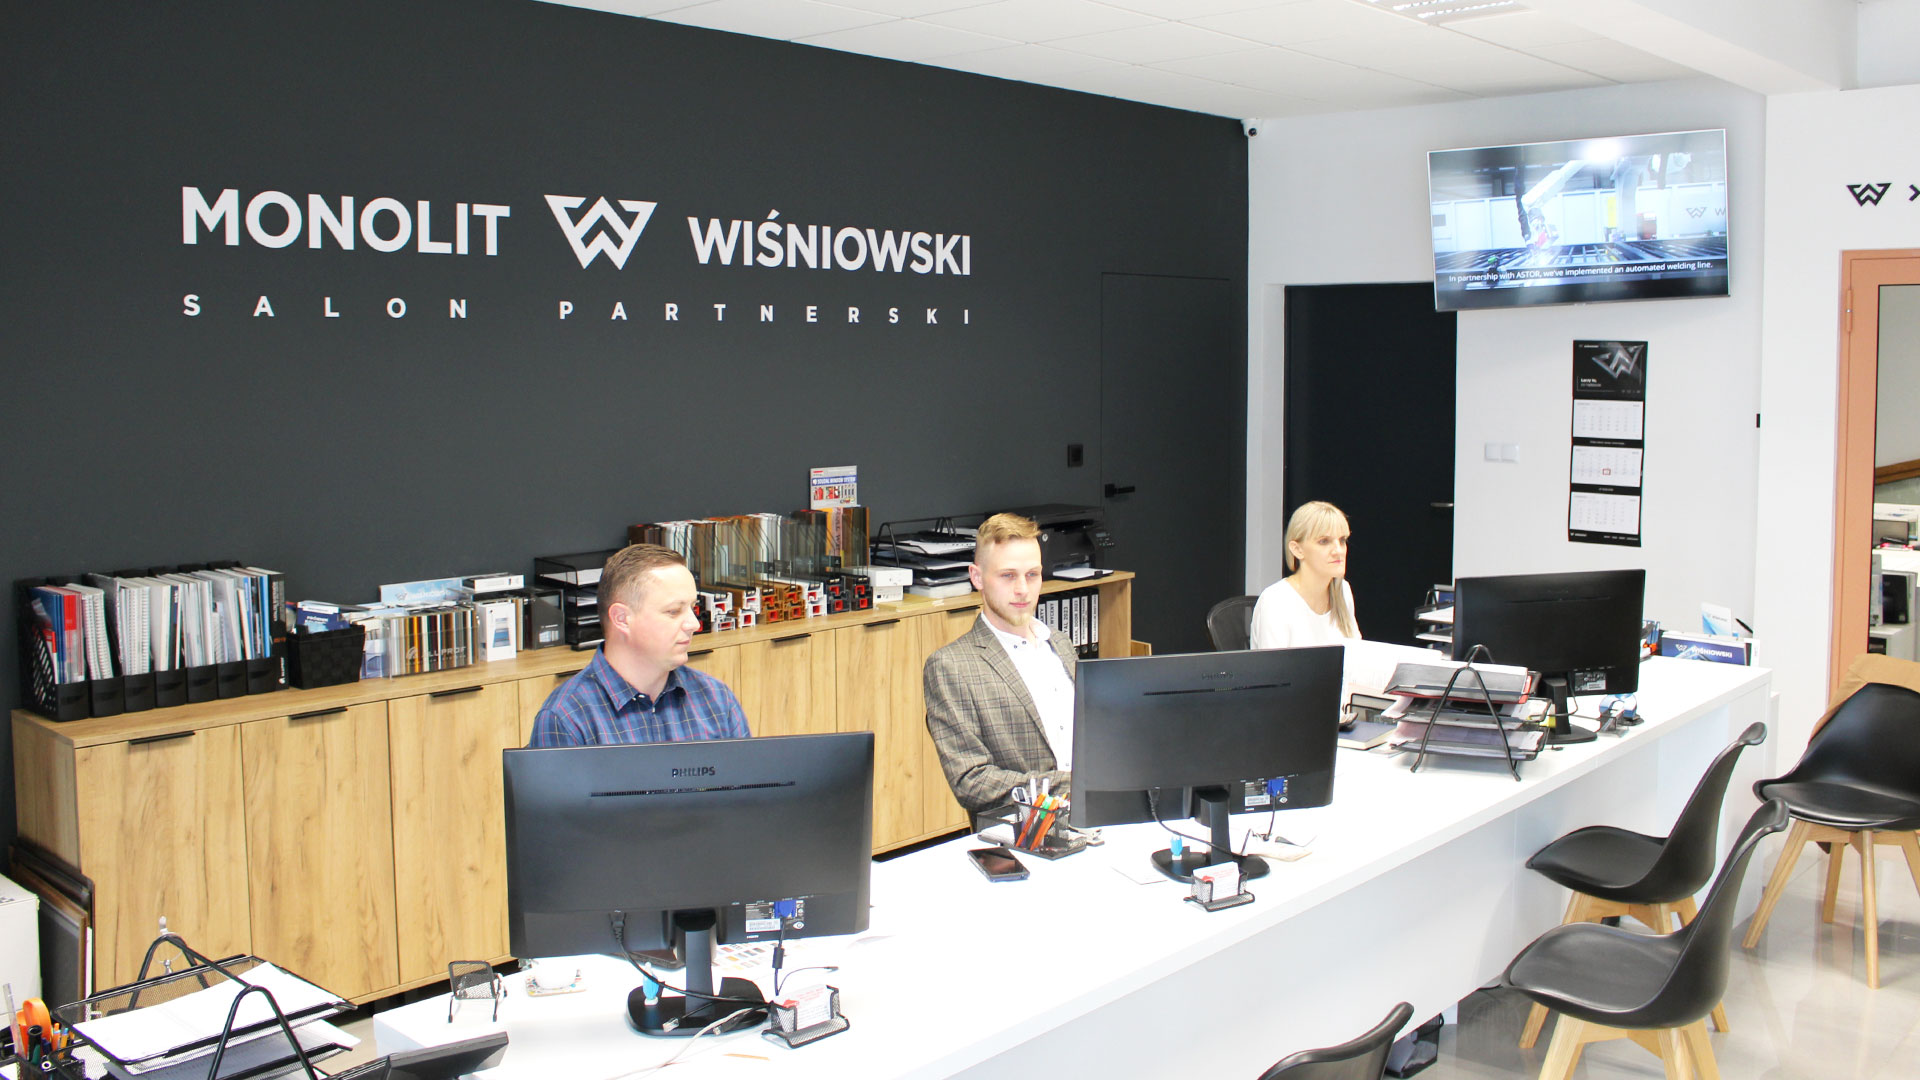 Jesteśmy salonem partnerskim Wiśniowski. Na zdjęciu widoczni są pracownicy salonu firmowego Monolit: Aneta, Maciej i Krzysztof, siedzący przy biurku.